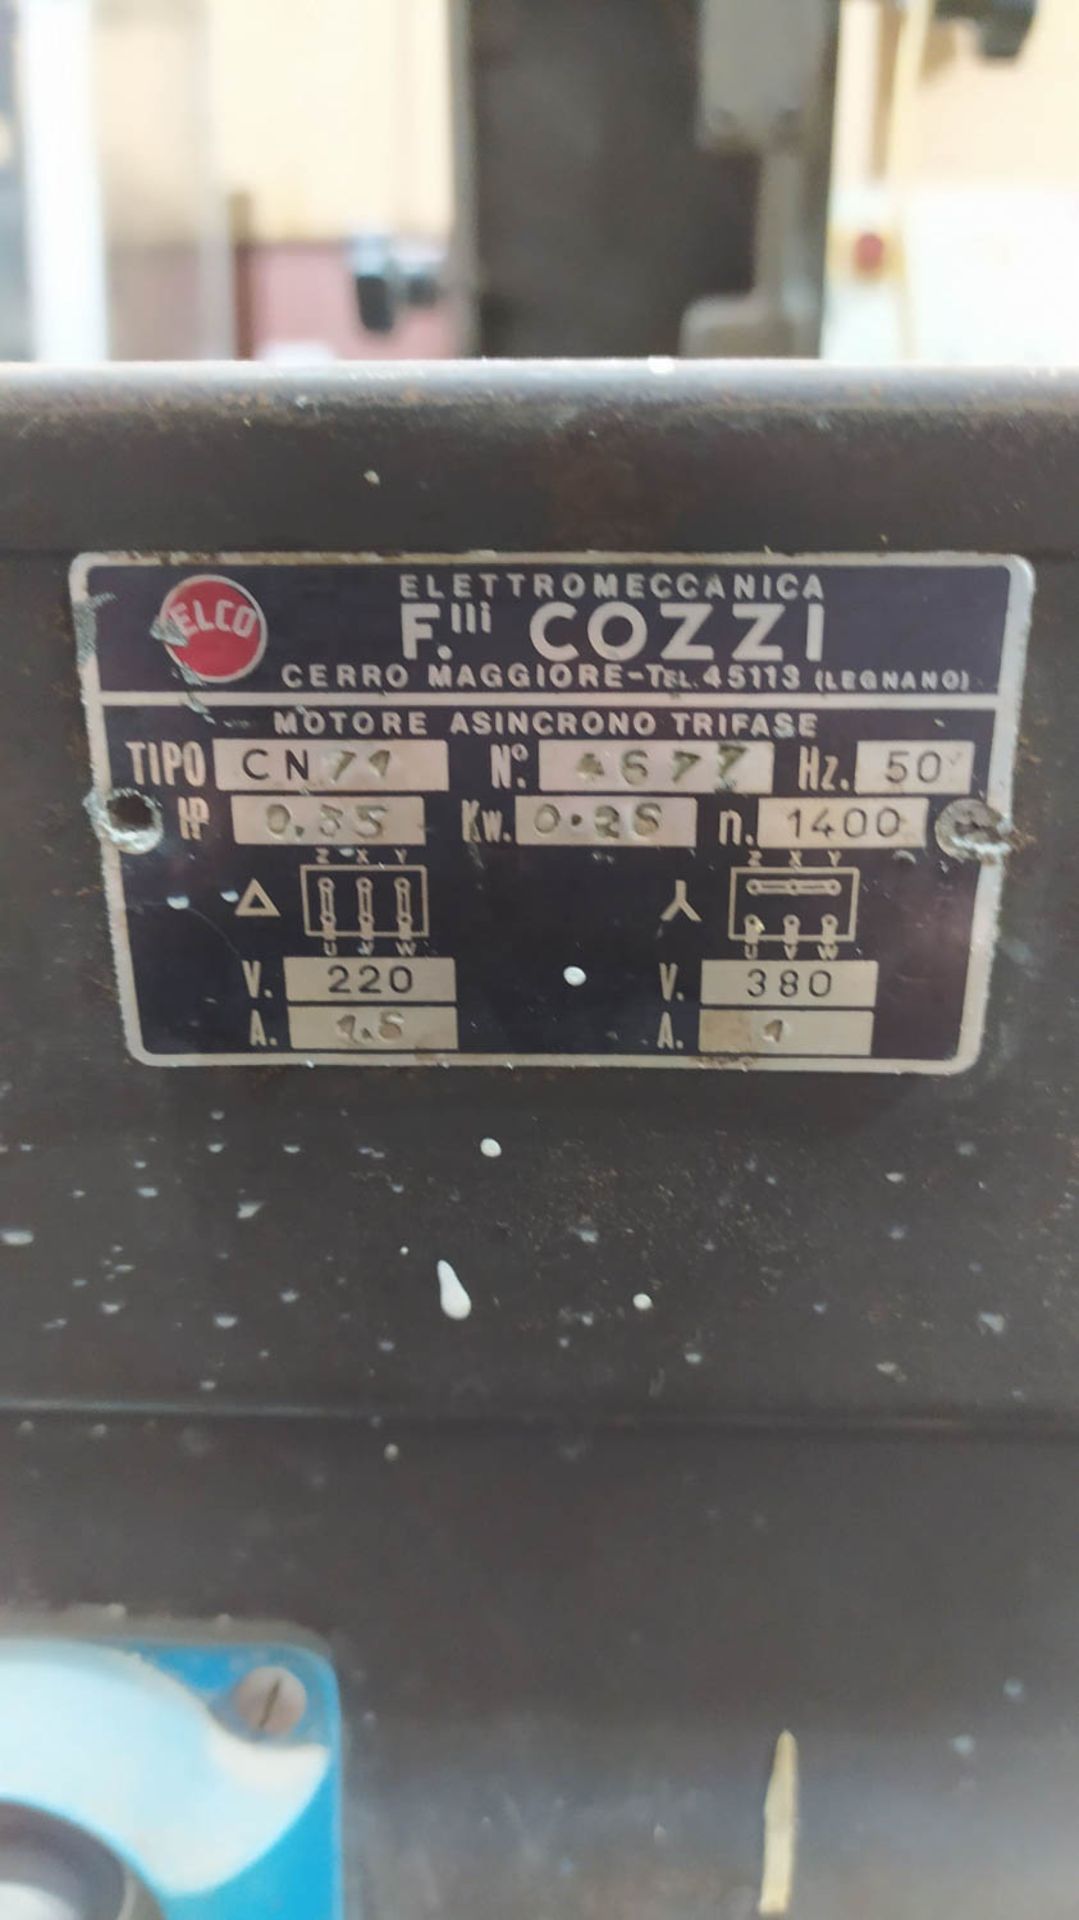 F. COZZI MDL. CN74 BELT SANDER; TABLETOP; 50HZ; 0.35IP; 0.26KW; 1400N; 220/380V/1.6 AMP, S/N: - Image 3 of 3